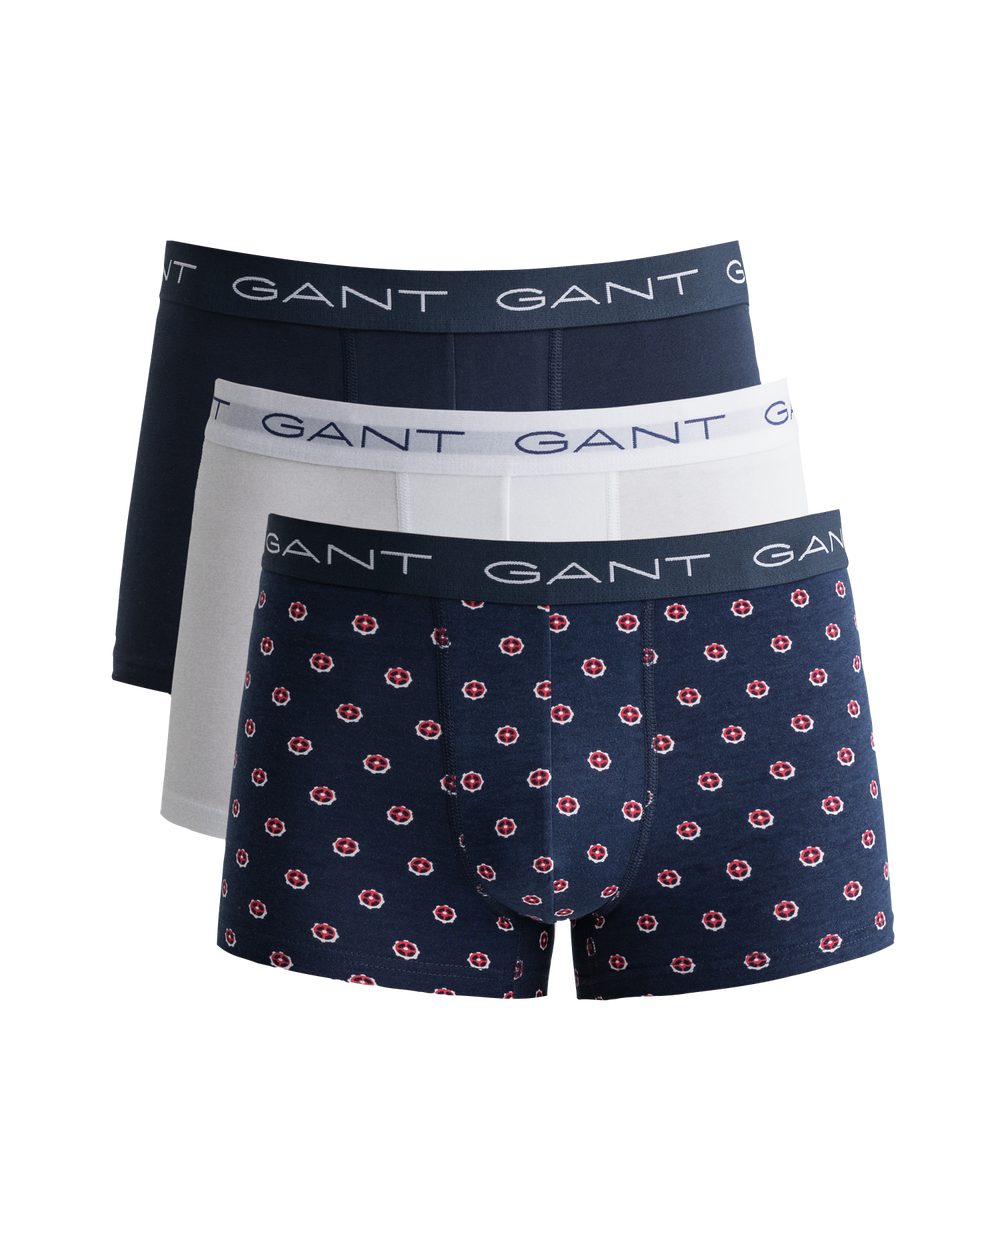 Gant Micro Print Trunk Men’s 3 Pack